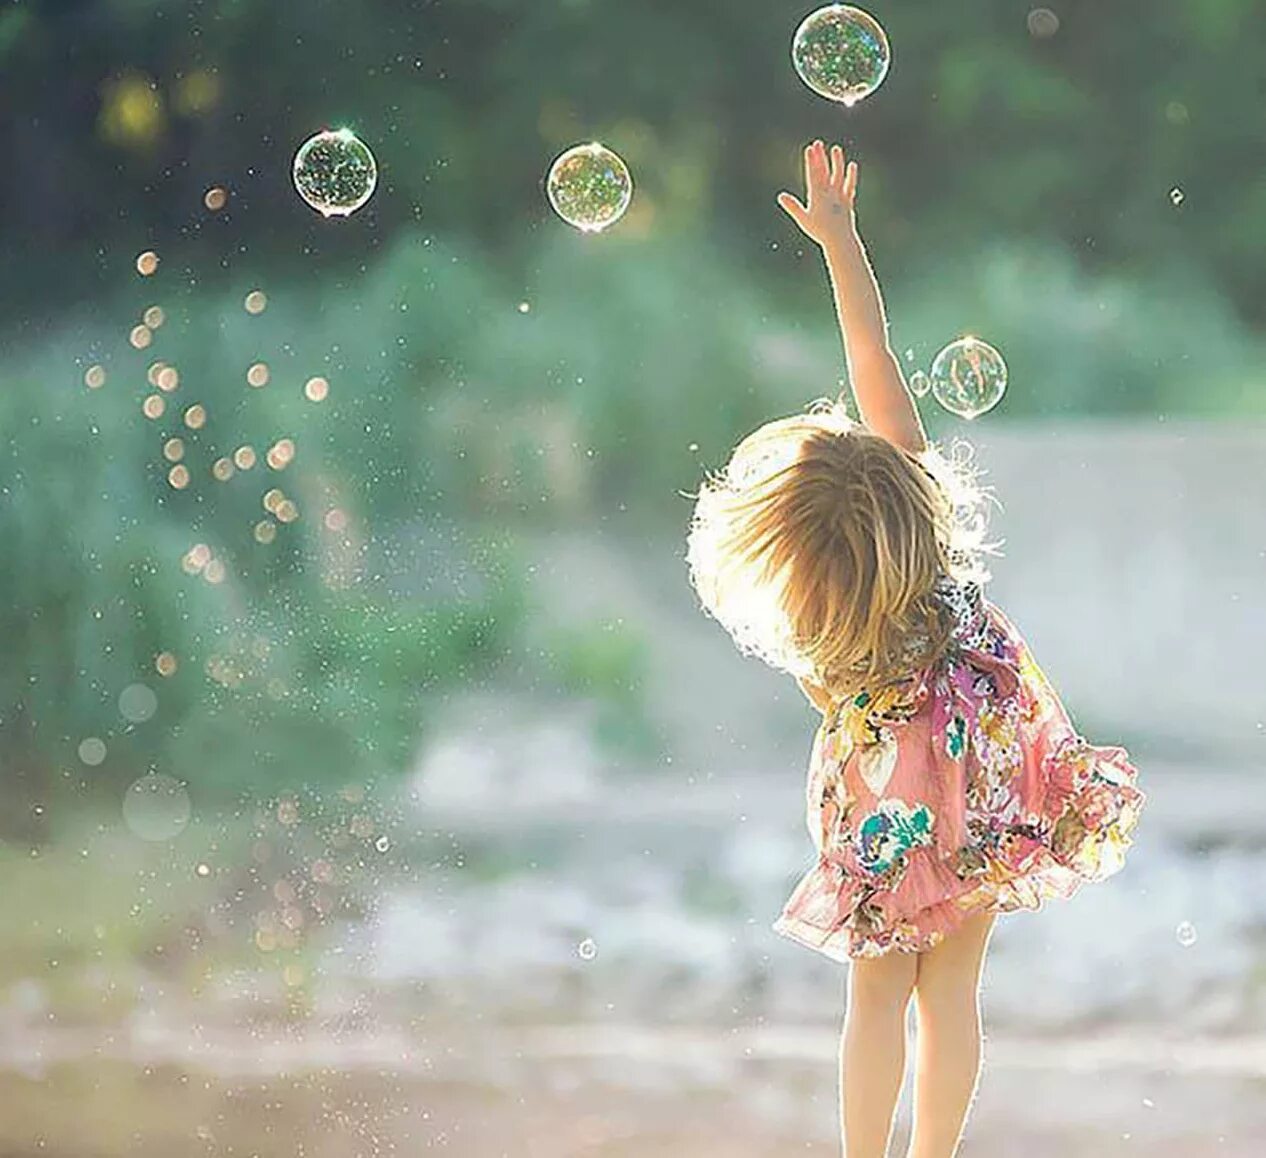 Вокруг мир всегда. Девушка с мыльными пузырями. Радость в простых вещах. Маленькие радости жизни. Прекрасные мгновения жизни.